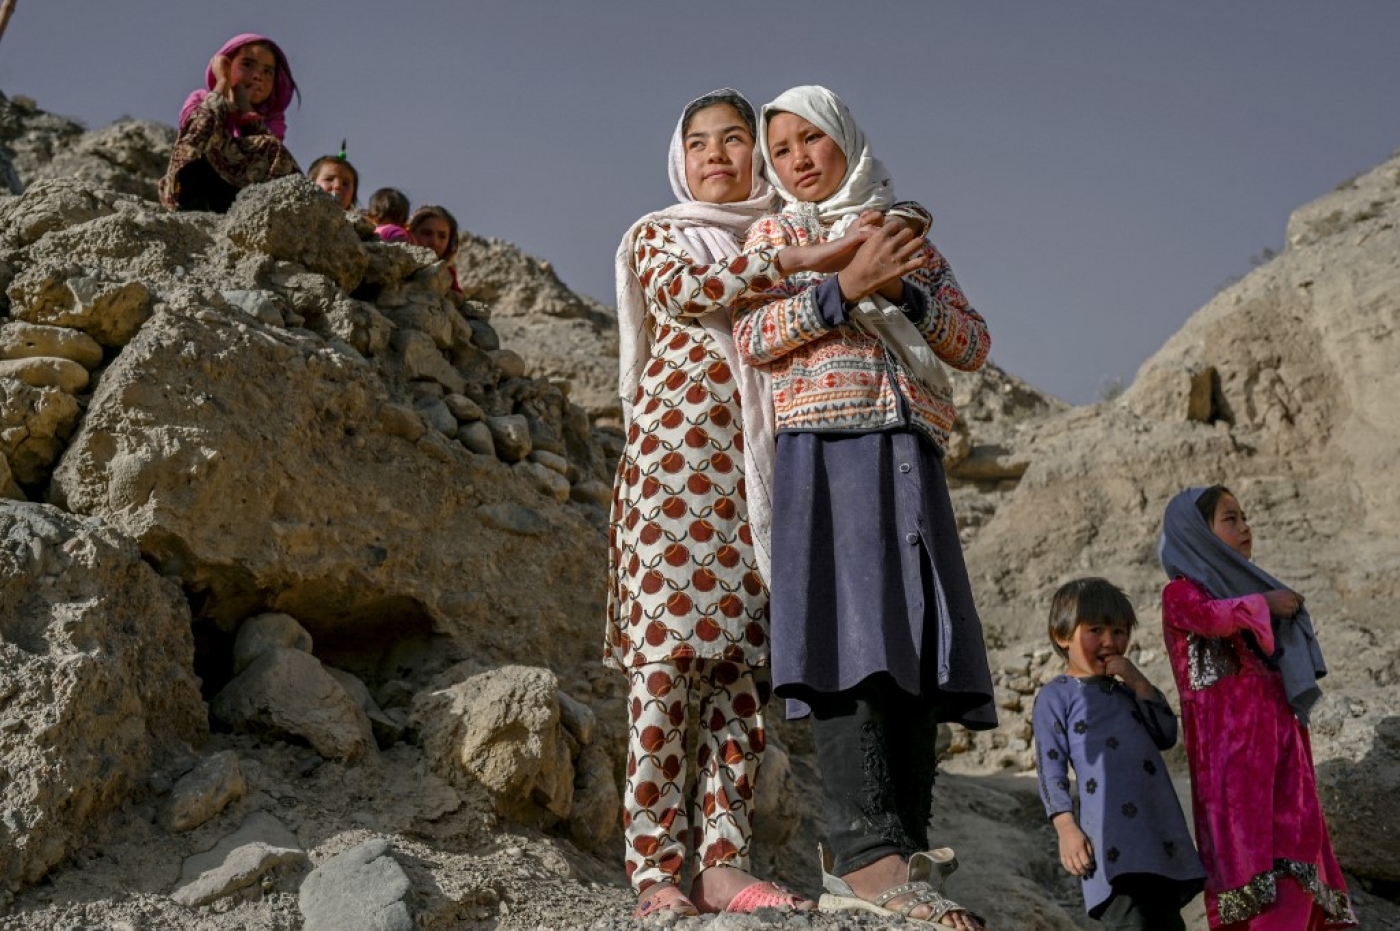 Des enfants de l’ethnie Hazara se tiennent sur une falaise creusée de grottes où les gens vivent encore comme il y a des siècles à Bamiyan, en Afghanistan, le 3 octobre 2021 (AFP/Bulent Kilic)